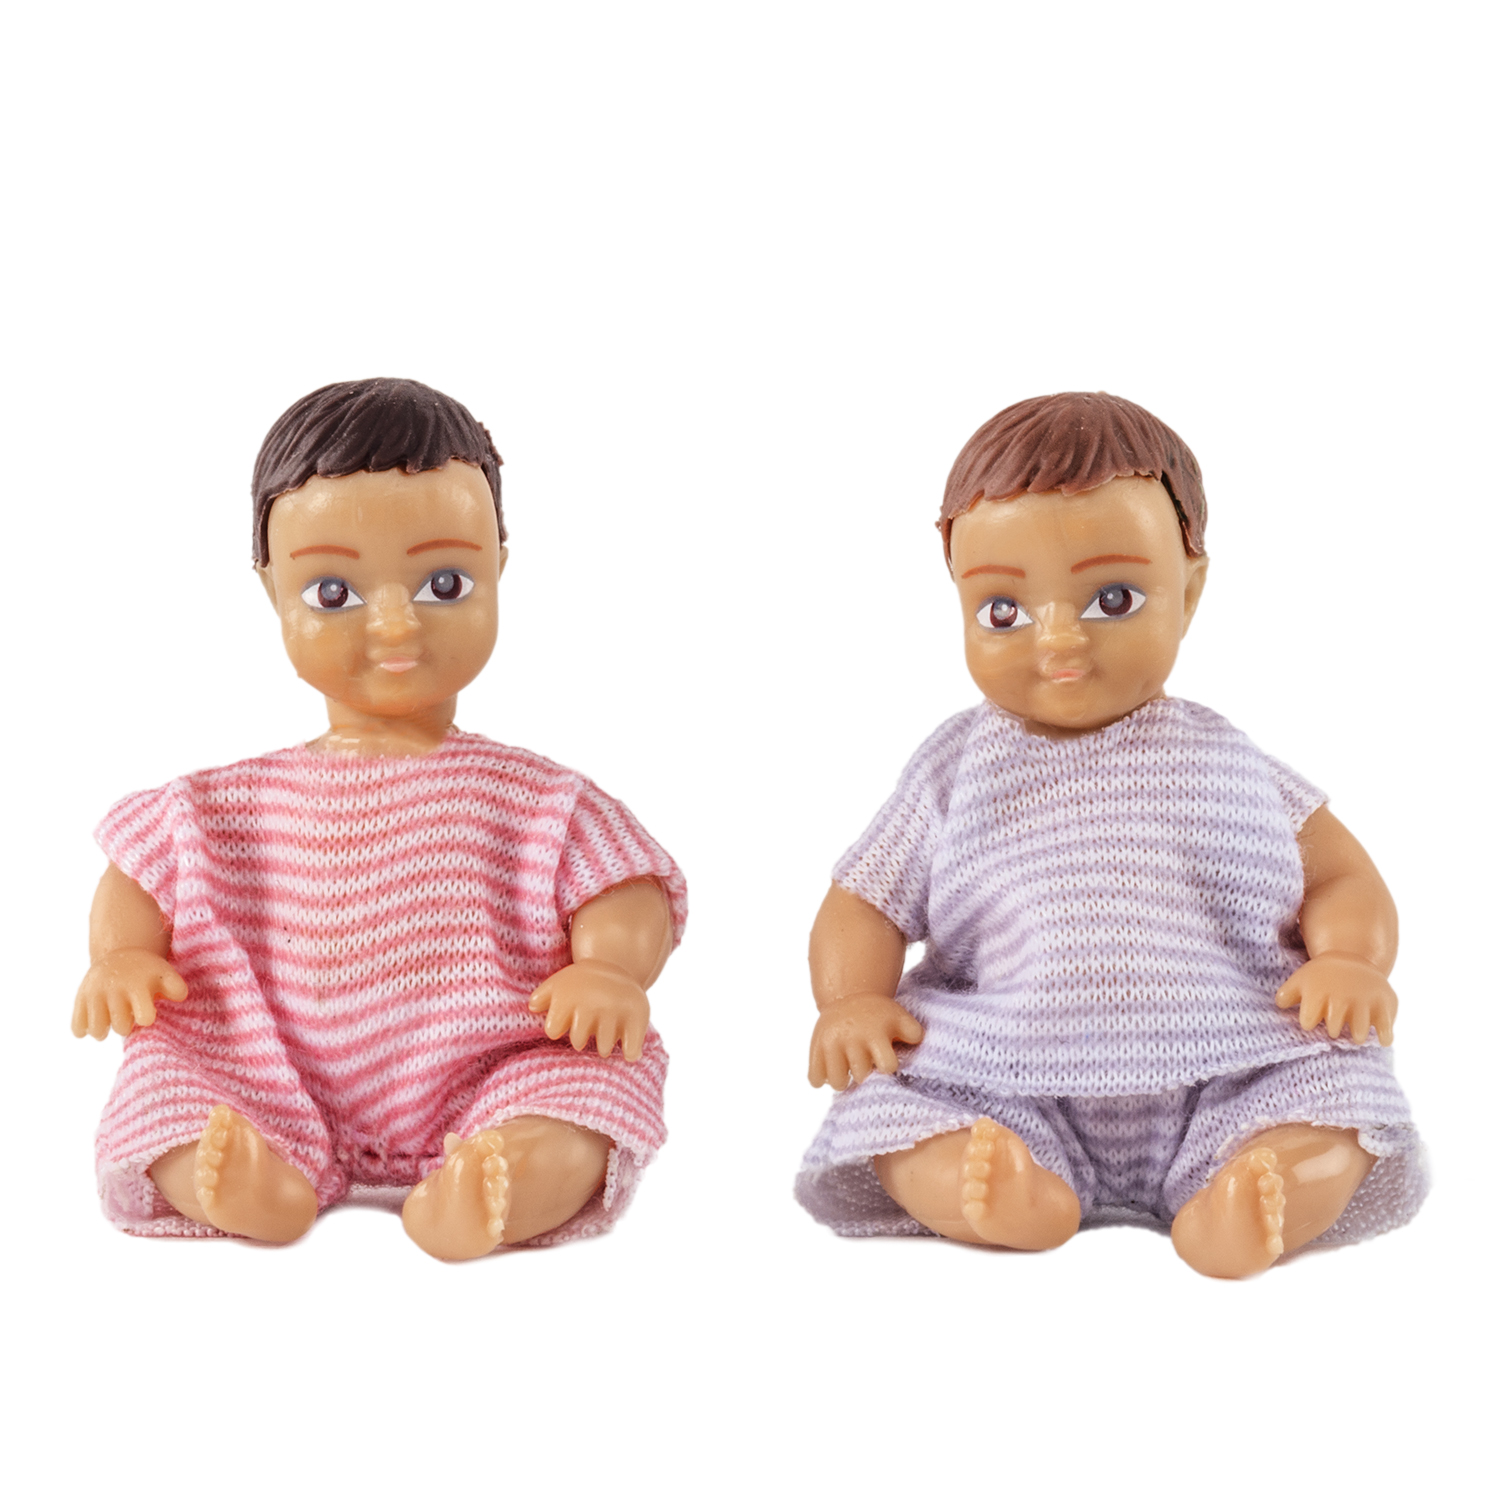 Dolls lundby dollhouse dolls 2 babies